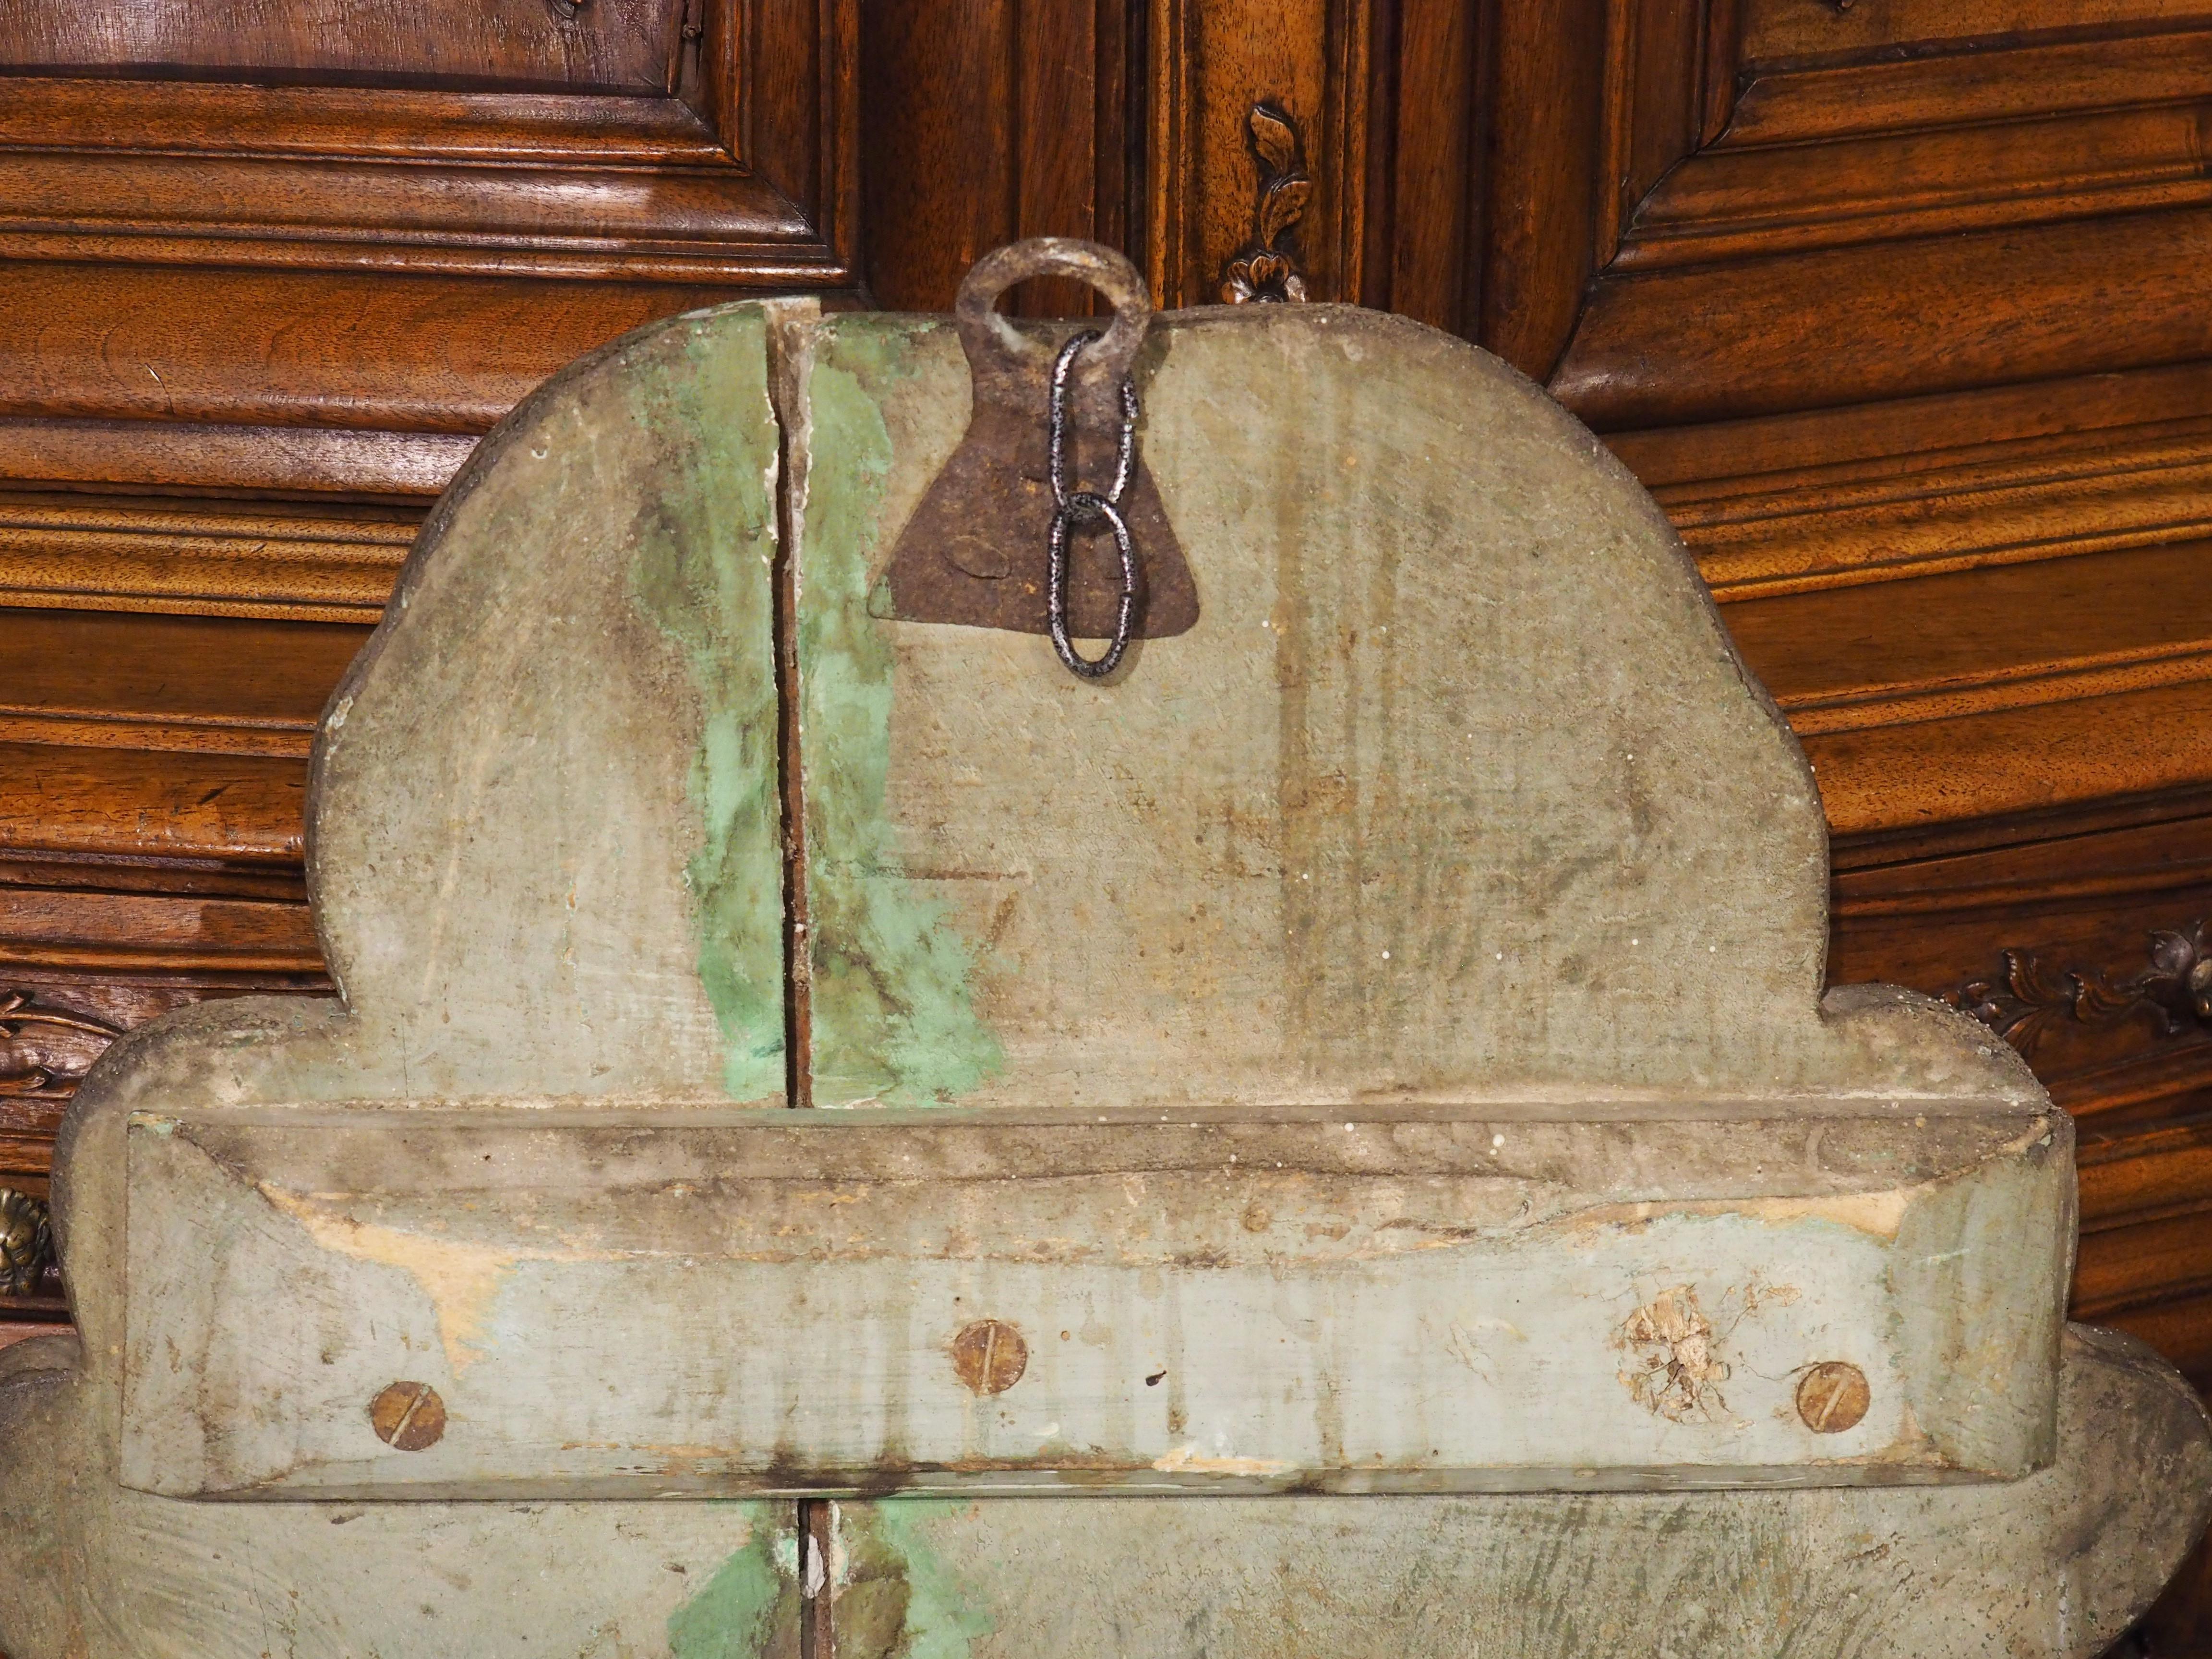 Diese große Kartusche wurde um 1700 in Italien aus Holz geschnitzt und von Hand mit einem zentralen Wappen bemalt. Das Wappen ist einem französischen Schild aus dem 16. Jahrhundert nachempfunden, von einer goldenen Umrandung umgeben und mit einer